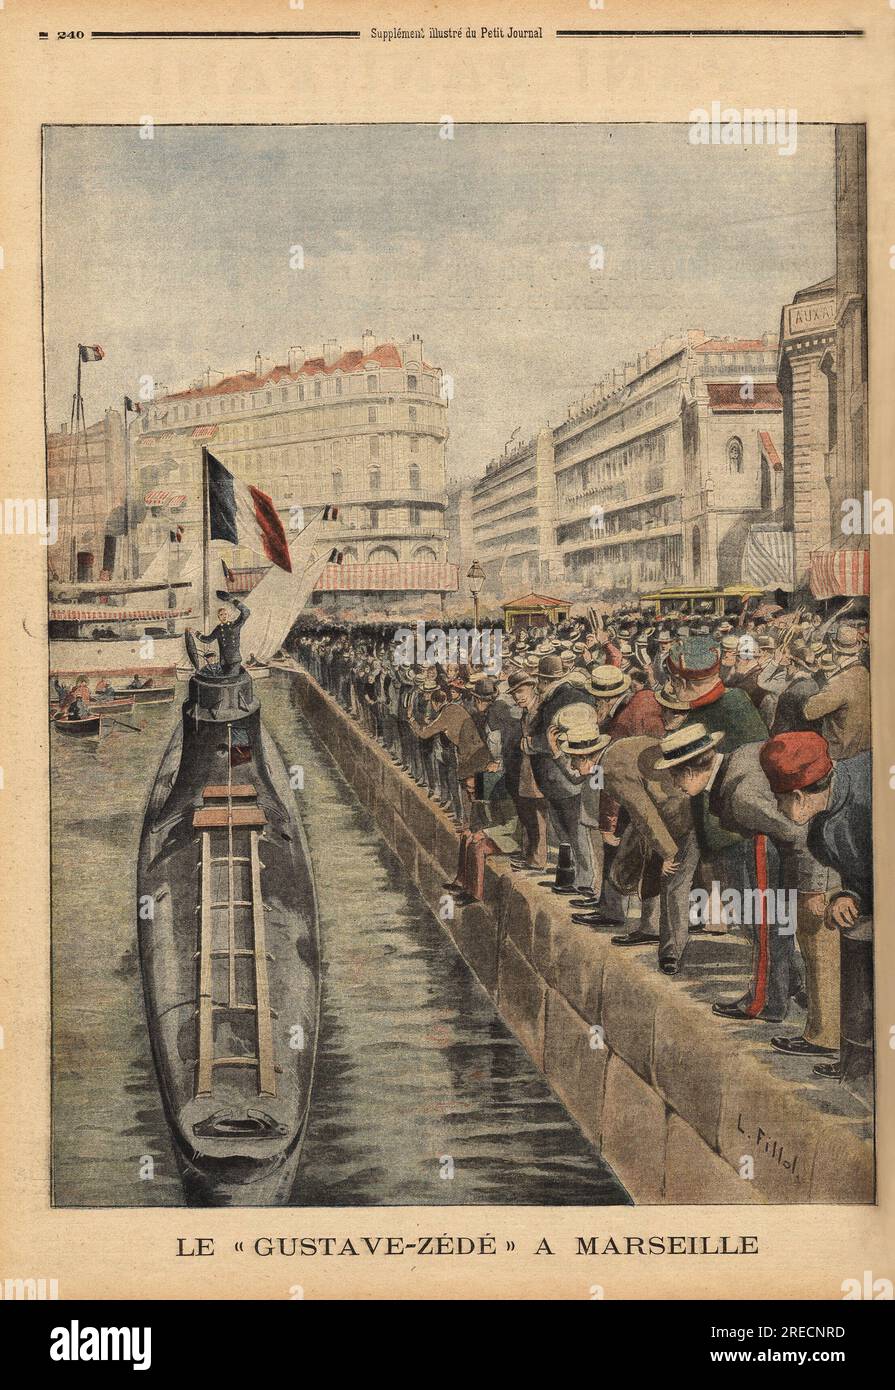 Le sous-Marin Gustave Zede emerge dans le vieux Port de Marseille, apres une serie de manoeuvres qui a debute a Ajaccio. Gravure in "Le Petit Journal" 2871901. . Stockfoto